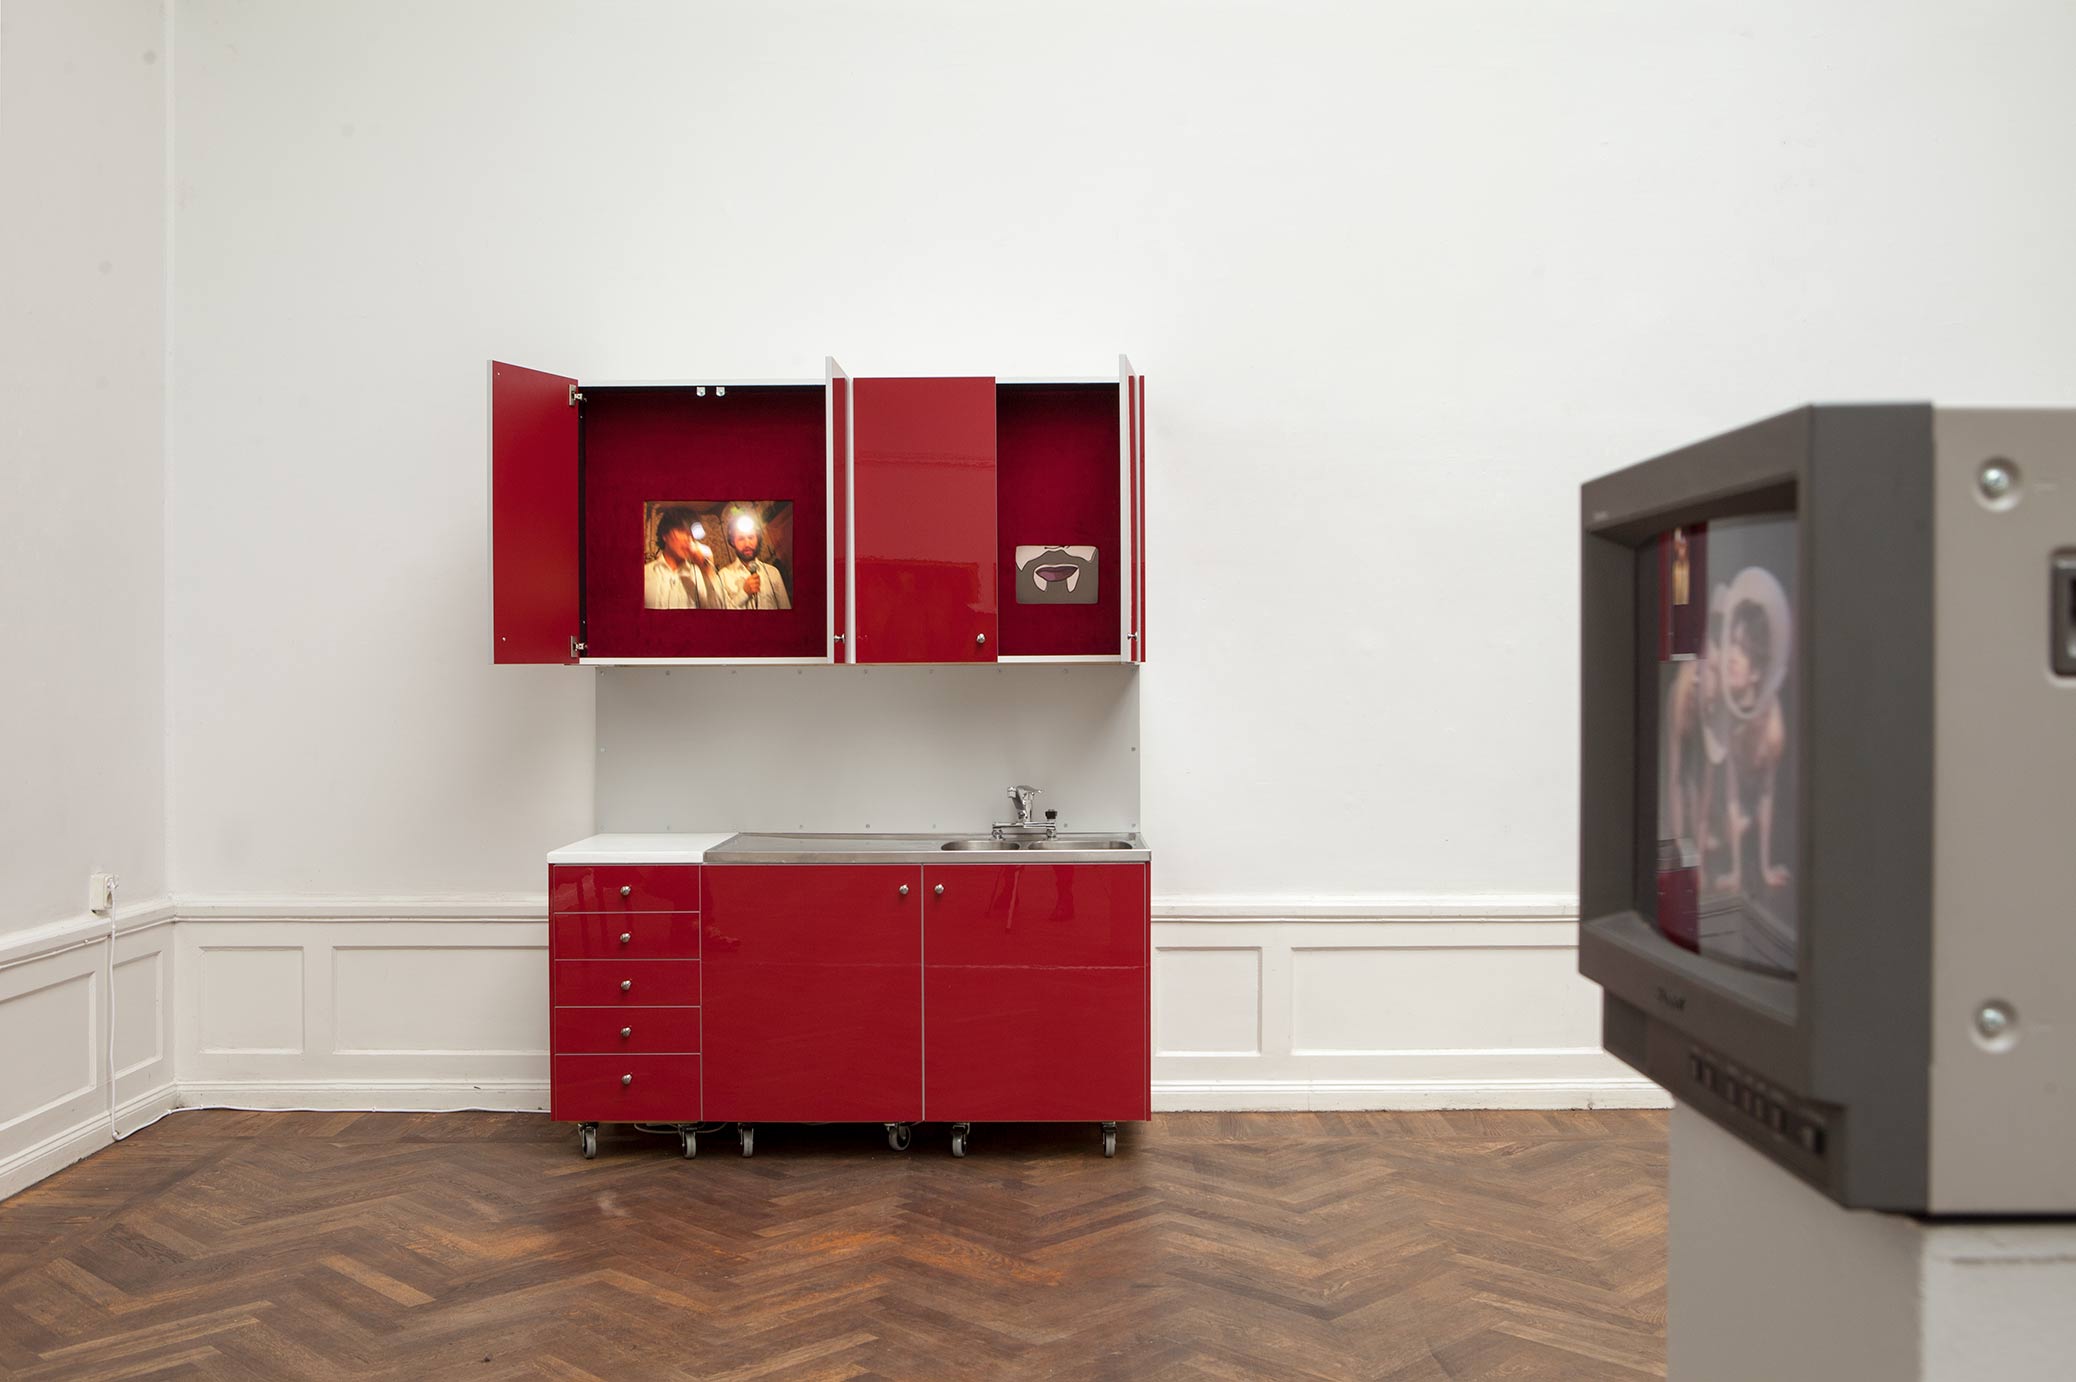 Cuisine Bizarre-köket, installation på Konstnärshuset, kök med gömda TV-skärmar.